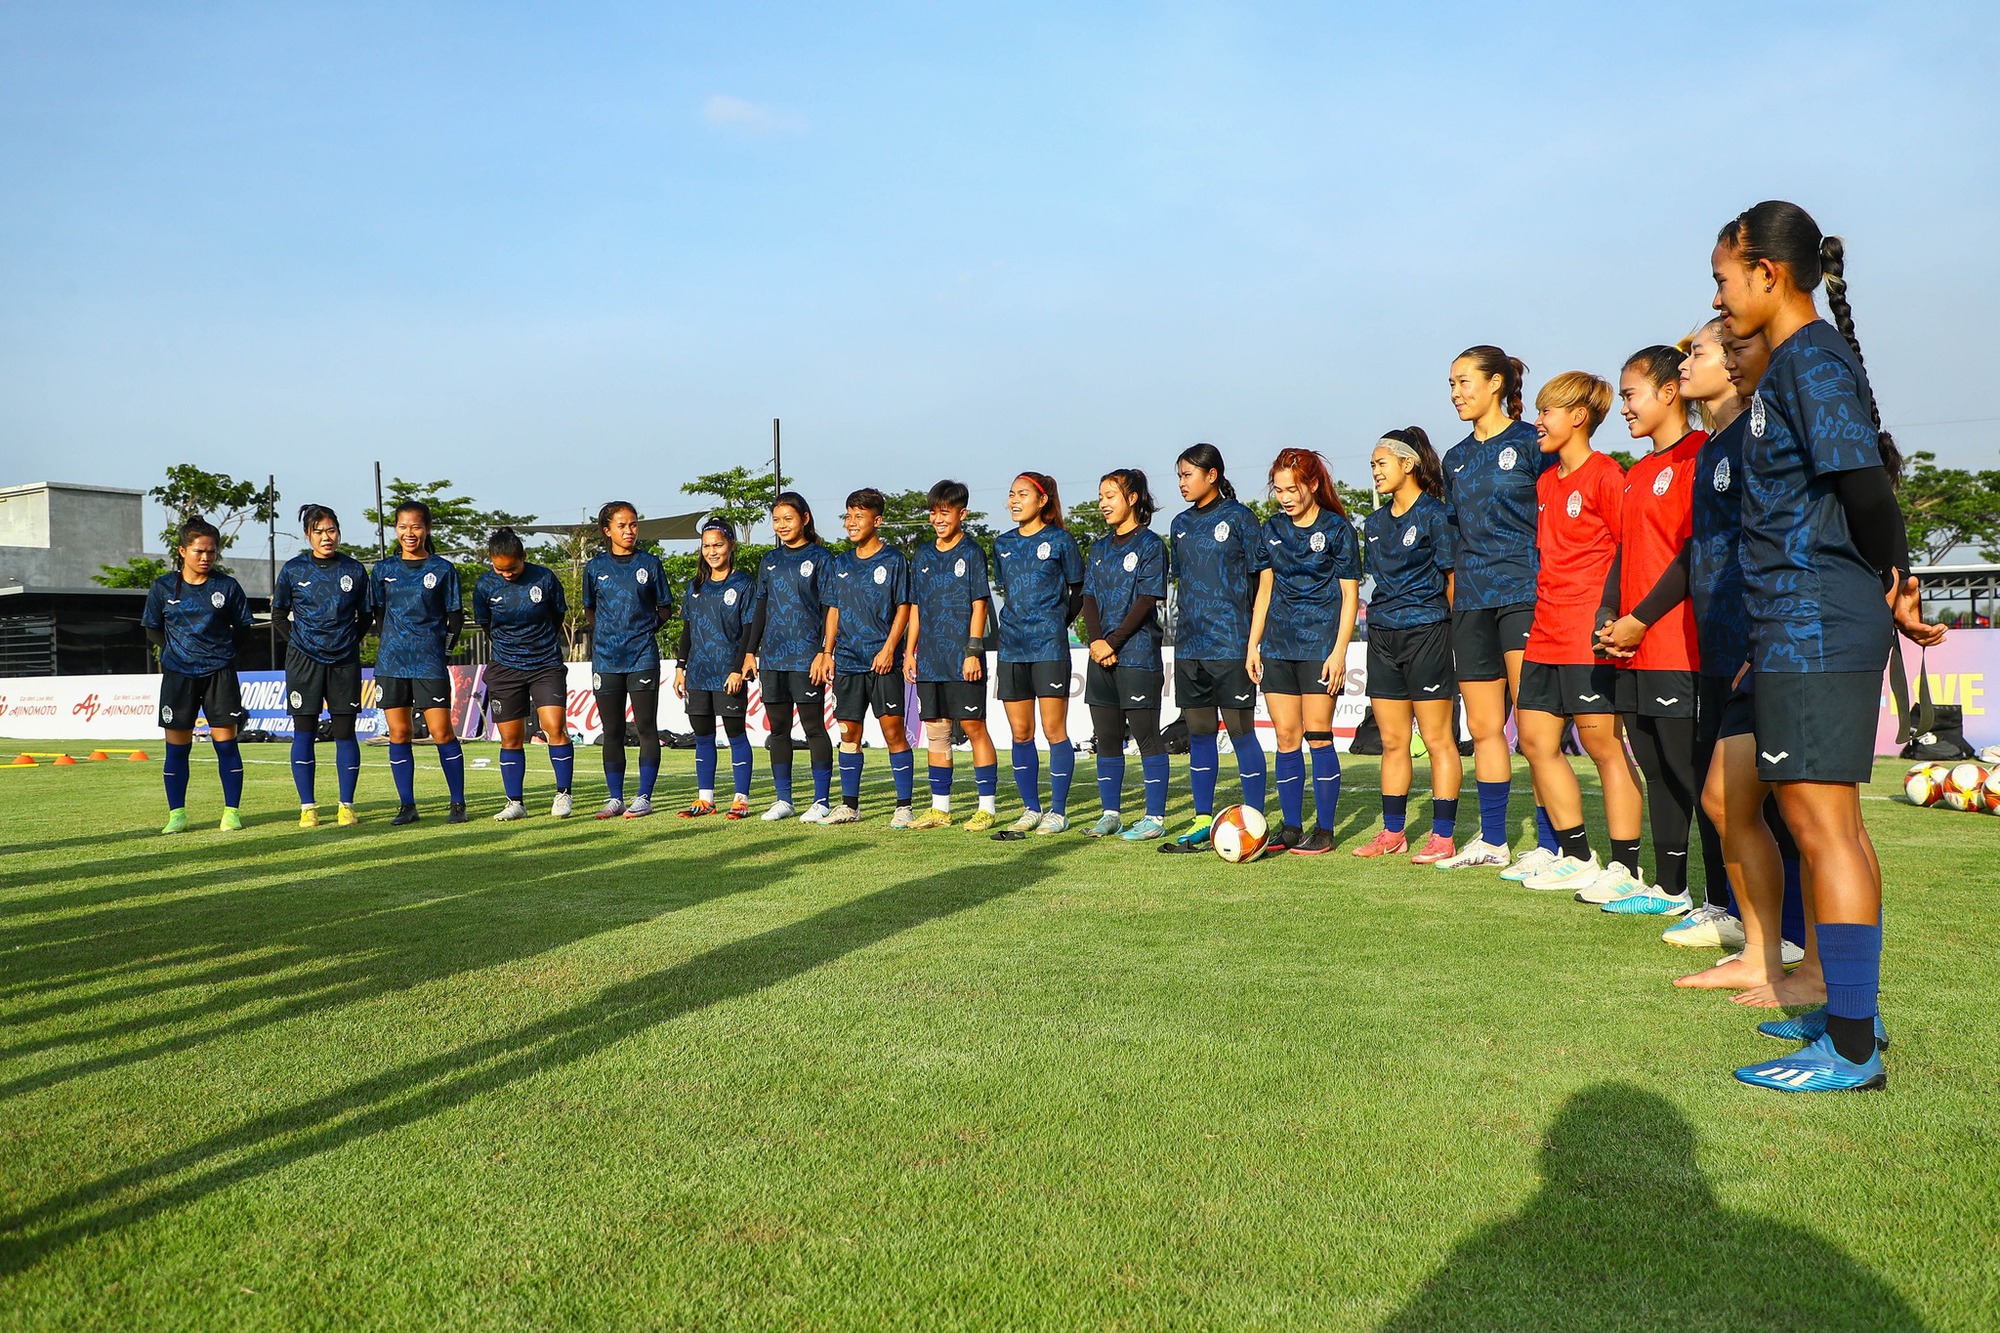 Chưa đầy 30 phút, vé bán kết giữa tuyển nữ Việt Nam và Campuchia được đặt hết - Ảnh 3.